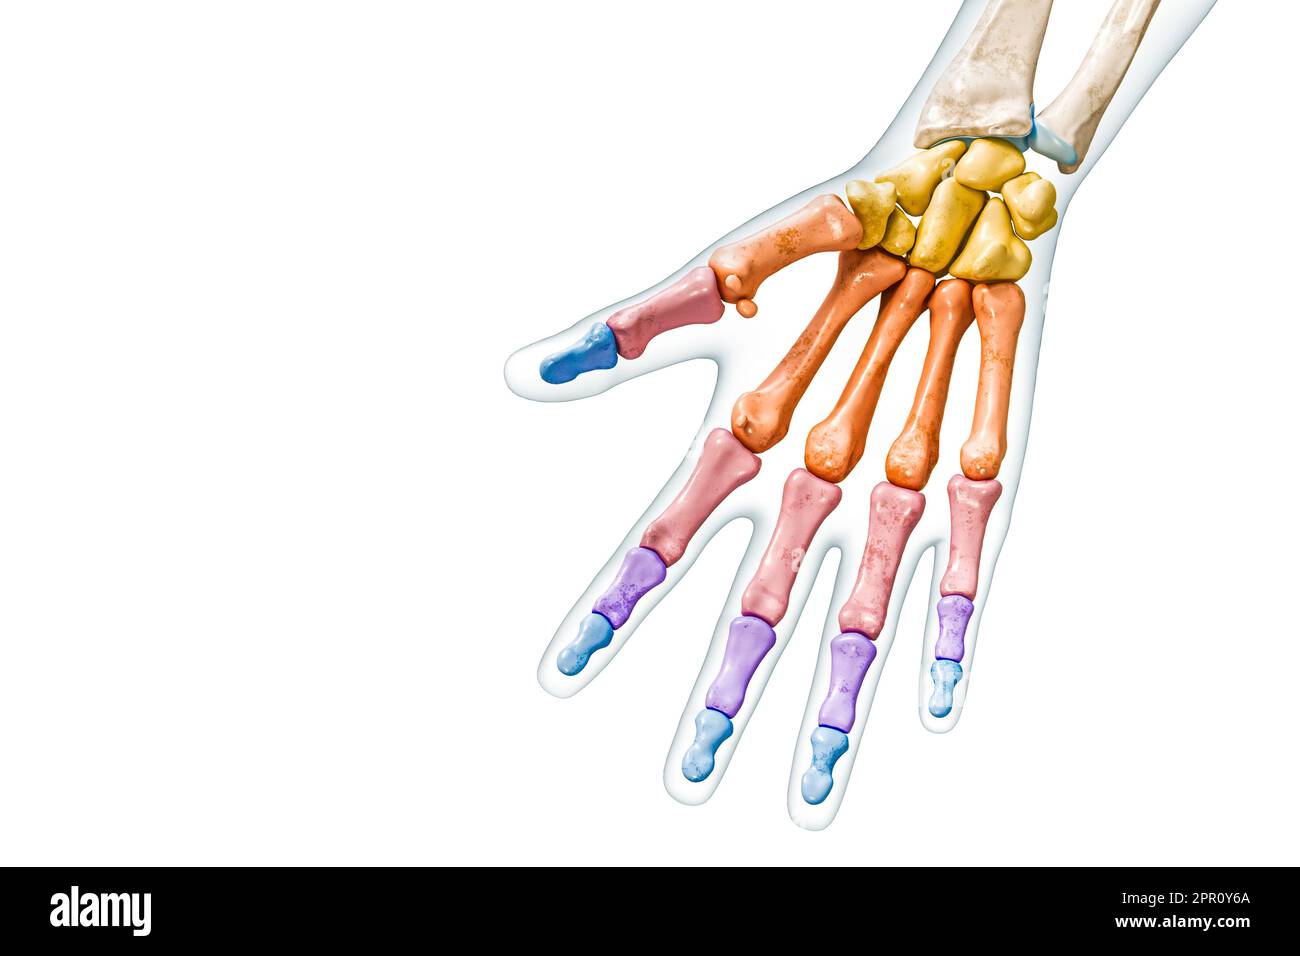 Knochengruppen der Hand und Finger, die mit Farben mit Körper 3D-Darstellung gekennzeichnet sind, isoliert auf Weiß mit Kopierbereich. Menschliche Skelettanatomie Stockfoto